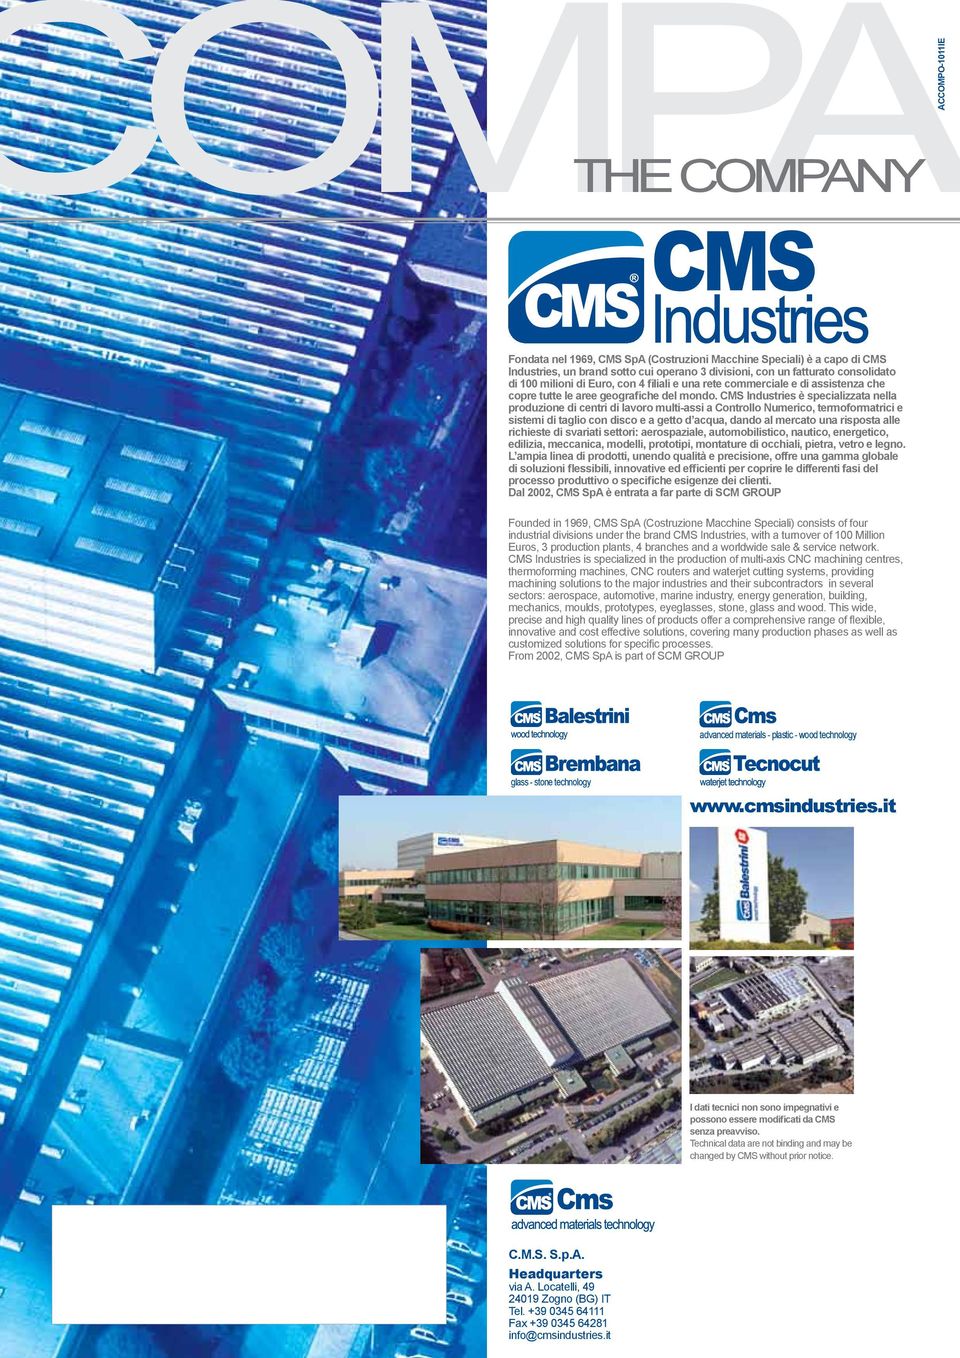 CMS Industries è specializzata nella produzione di centri di lavoro multi-assi a Controllo Numerico, termoformatrici e sistemi di taglio con disco e a getto d acqua, dando al mercato una risposta